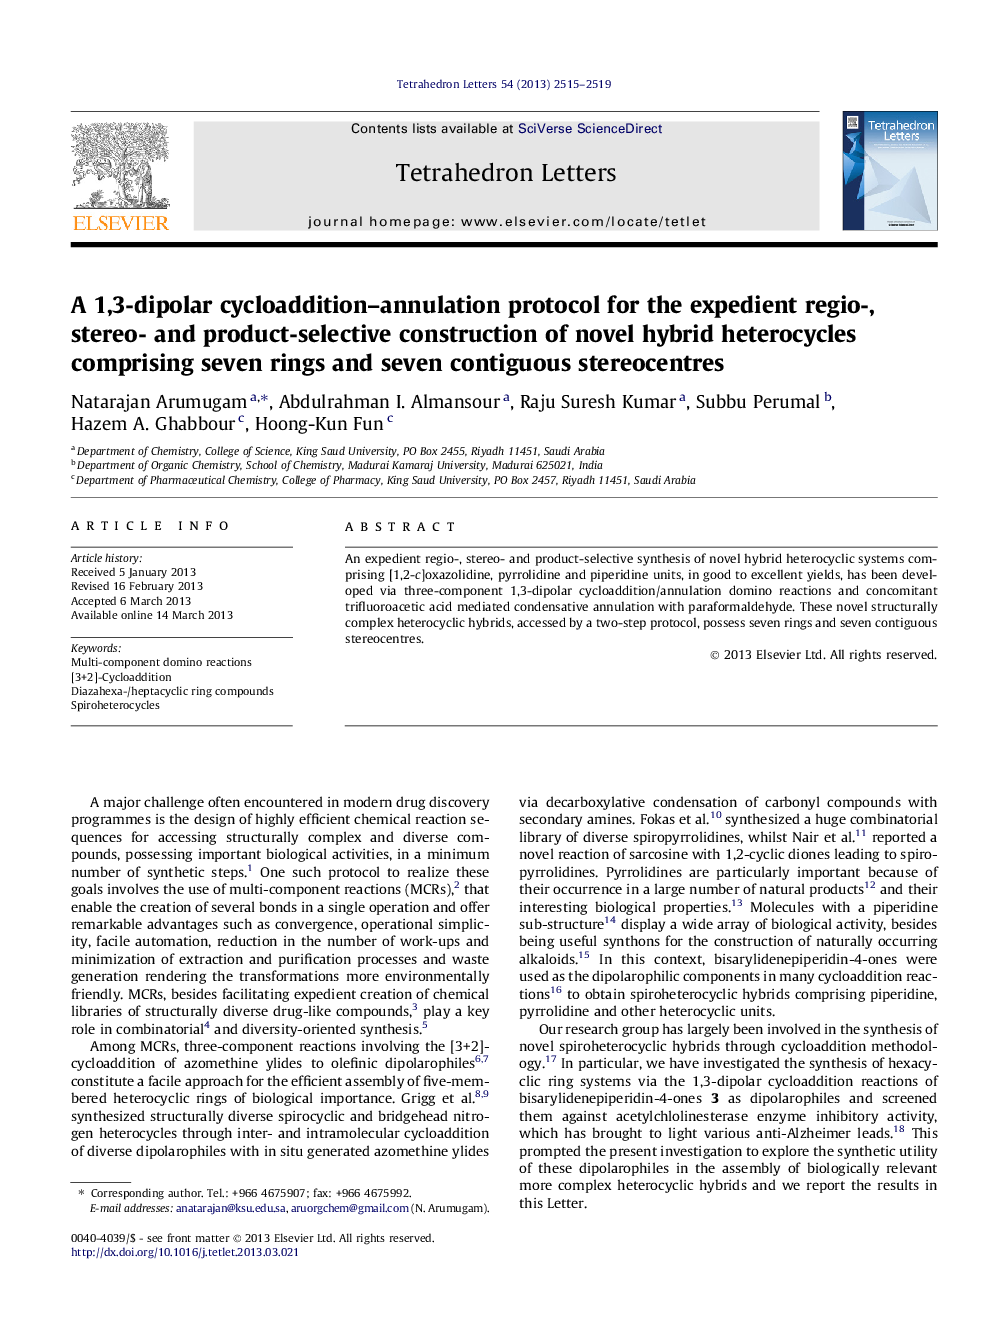 یک پروتکل سولفید سولفات سدیم 1،3-دیوپور برای ساختار انتخابی مناسب، استریو و محصول انتخابی از هتروسیکلهای ترکیبی جدید شامل هفت حلقه و هفت ناحیه مخلوط استریو 